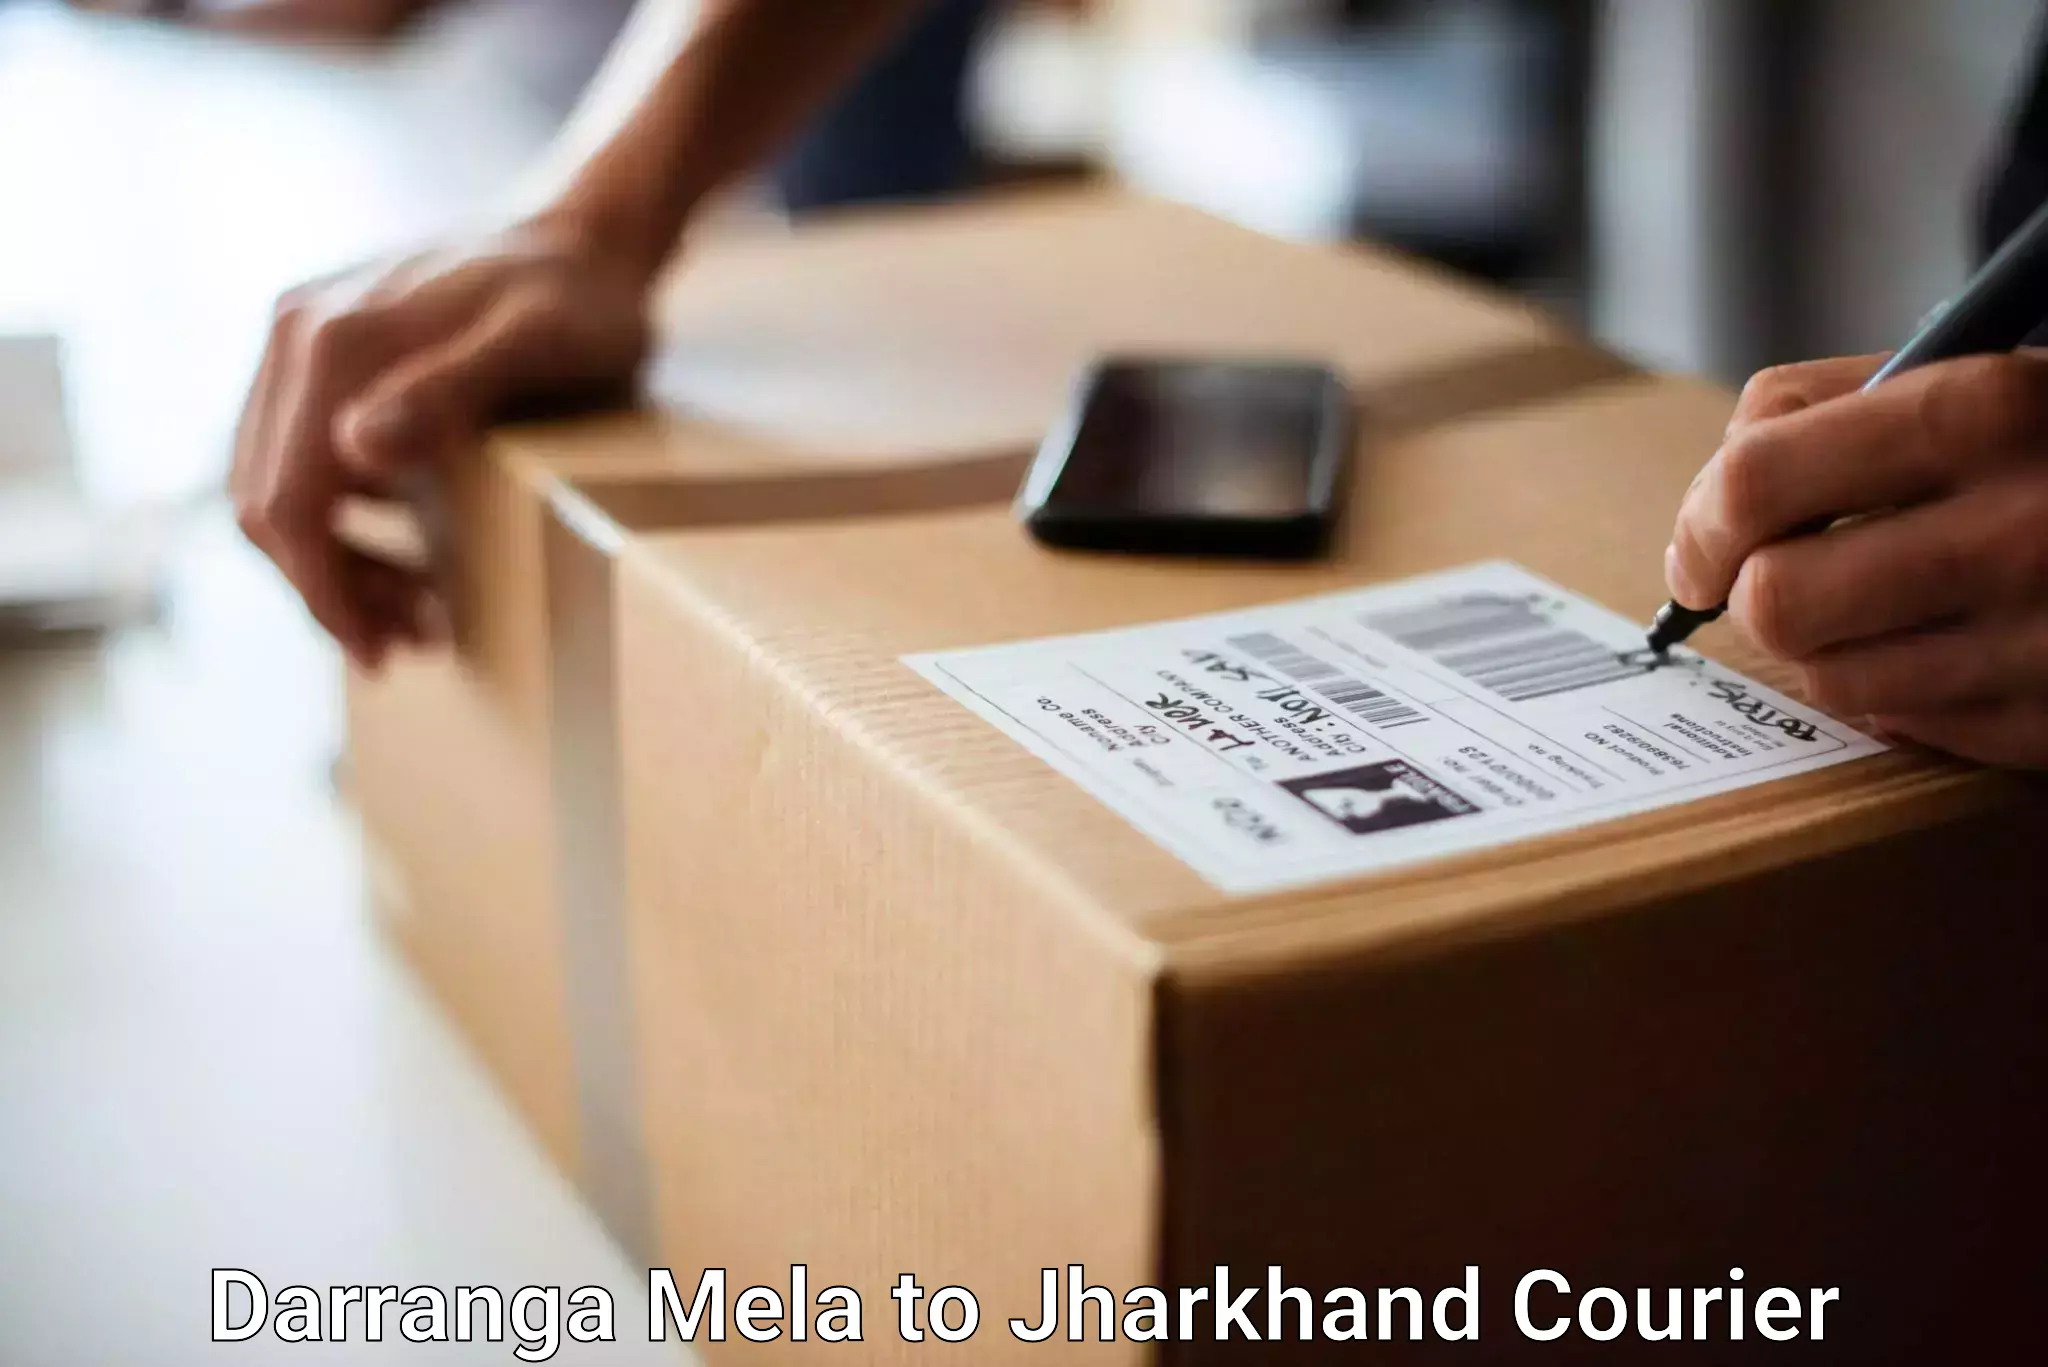 Hassle-free luggage shipping Darranga Mela to Latehar